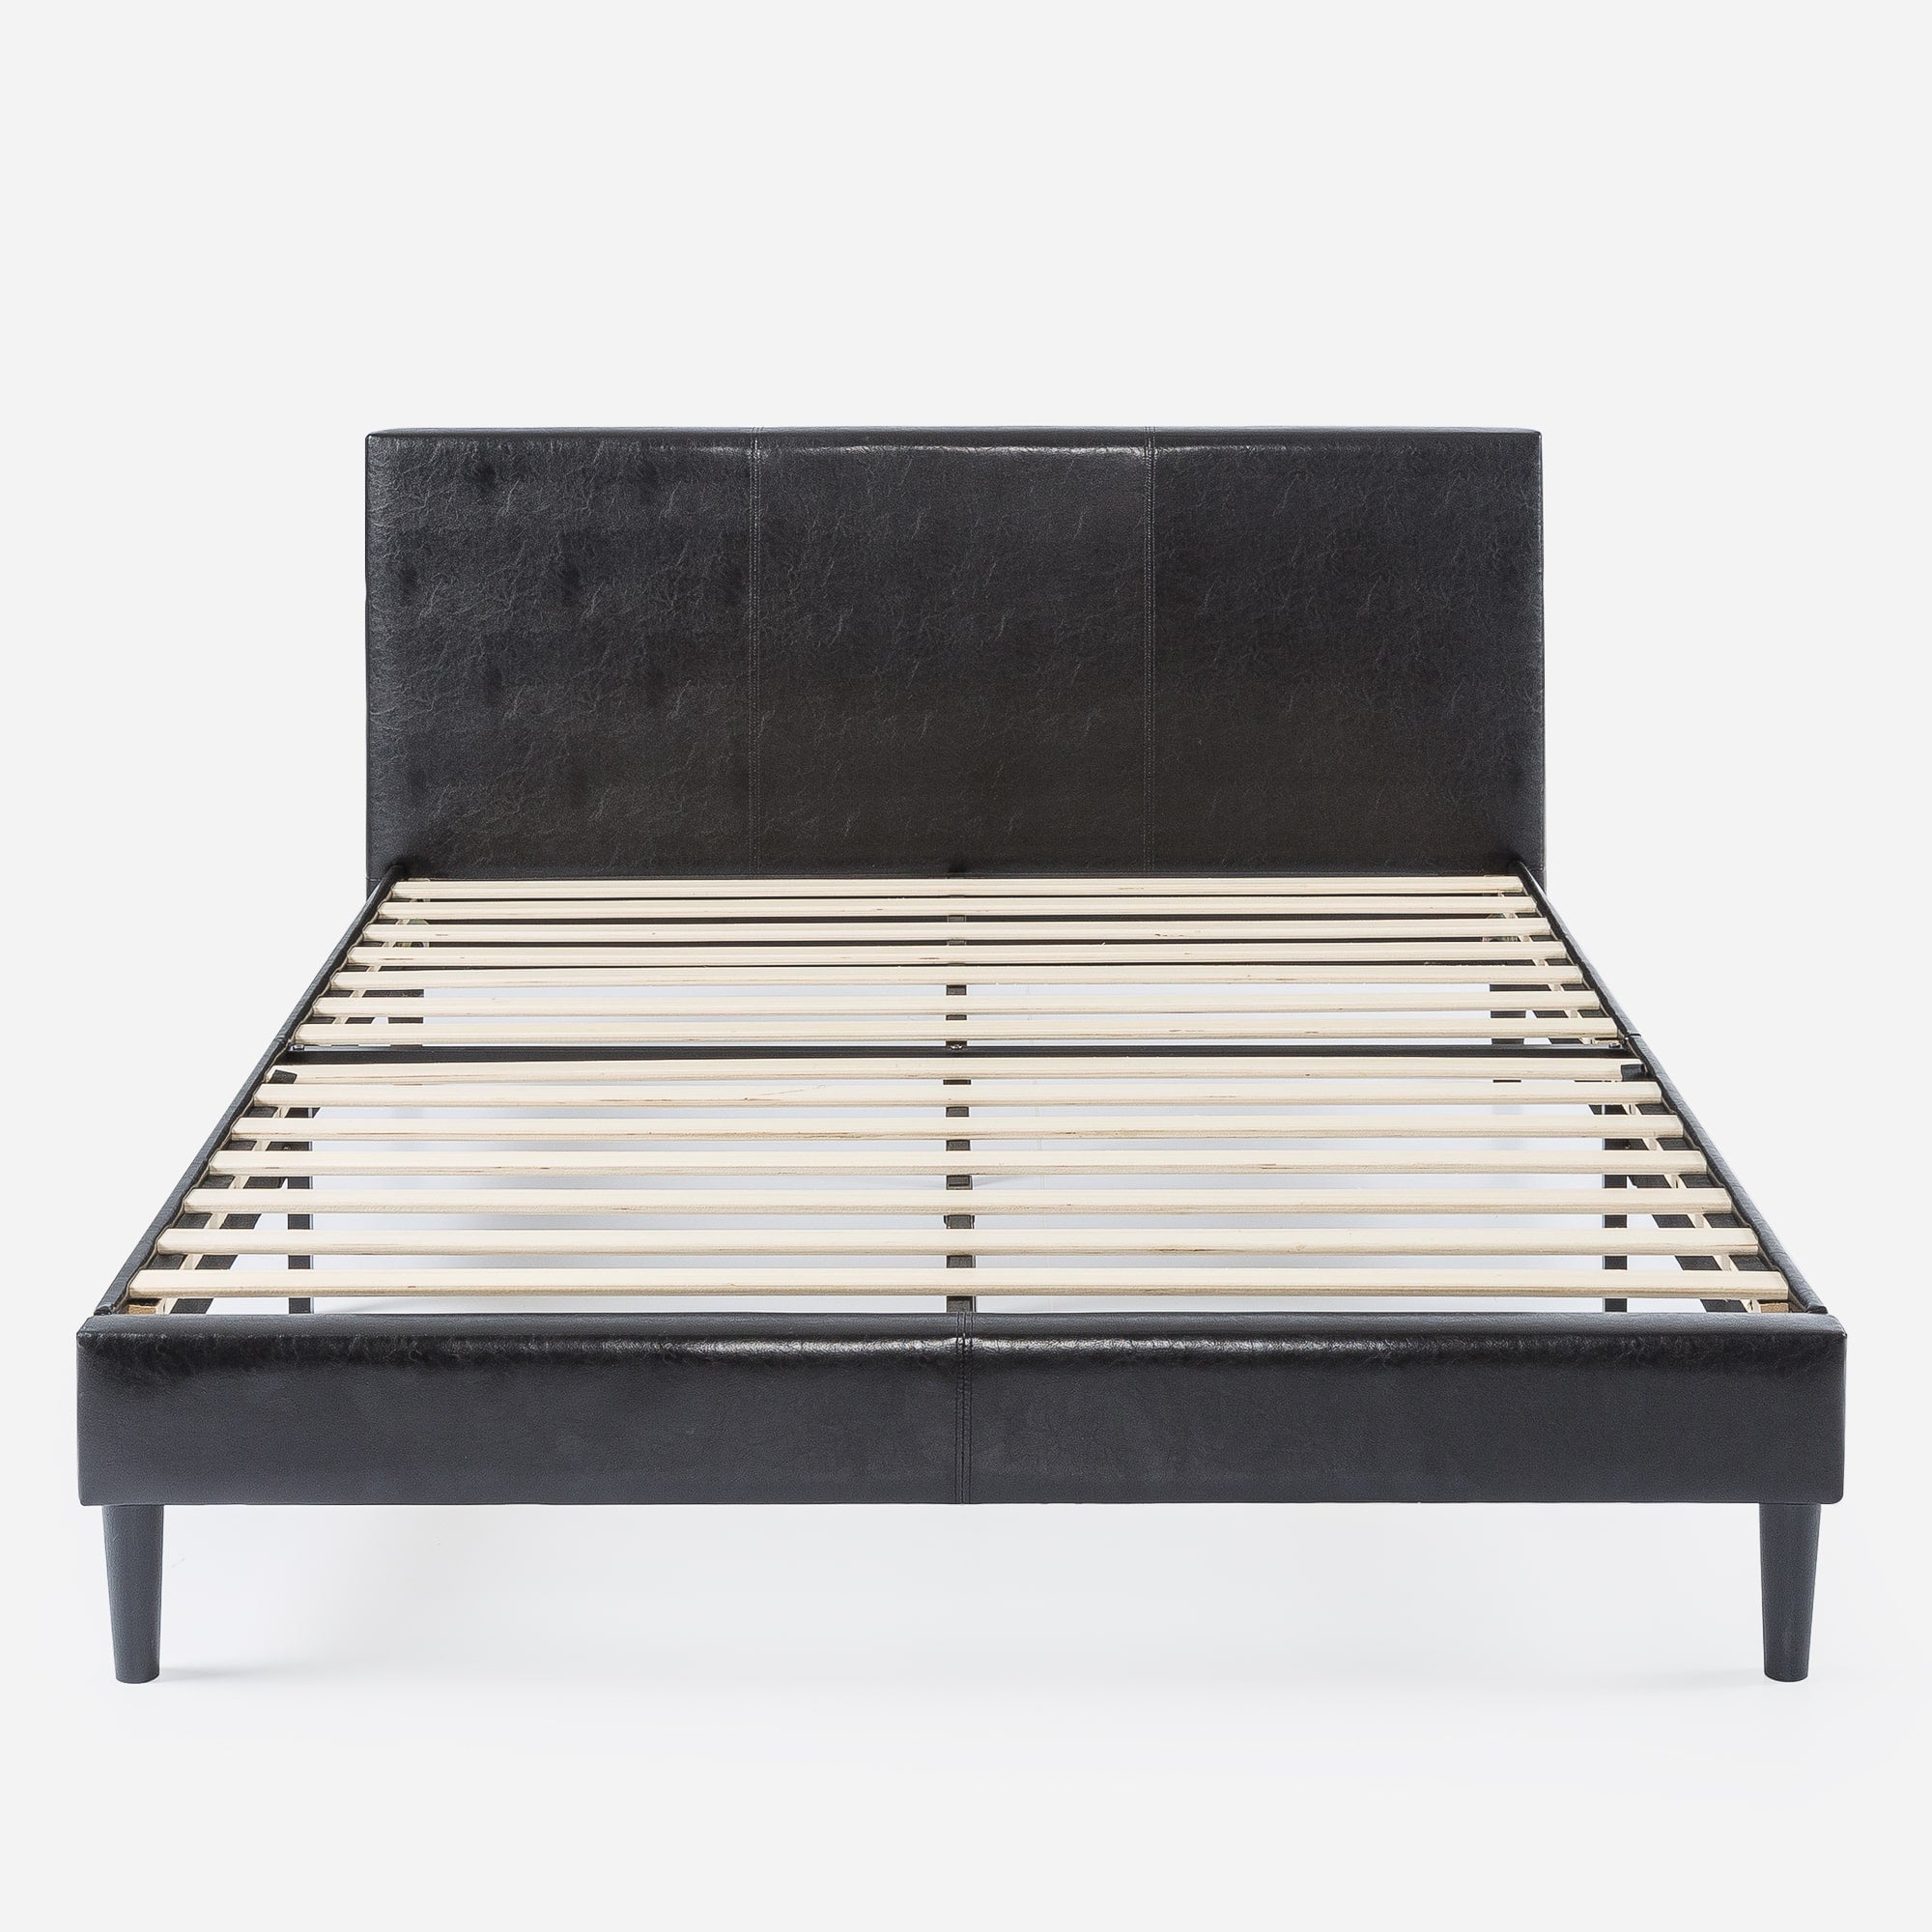 Jade Faux Leather Upholstered Platform Bed Frame with Short Headboard Black